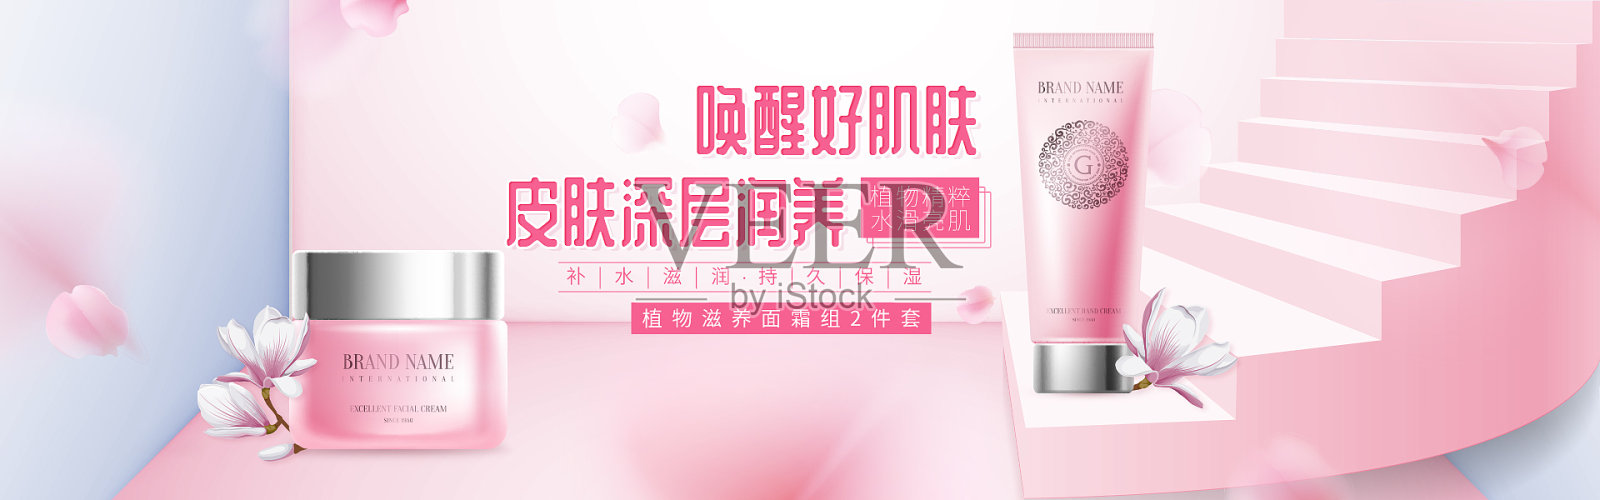 粉色梦幻风护肤品海报设计模板素材